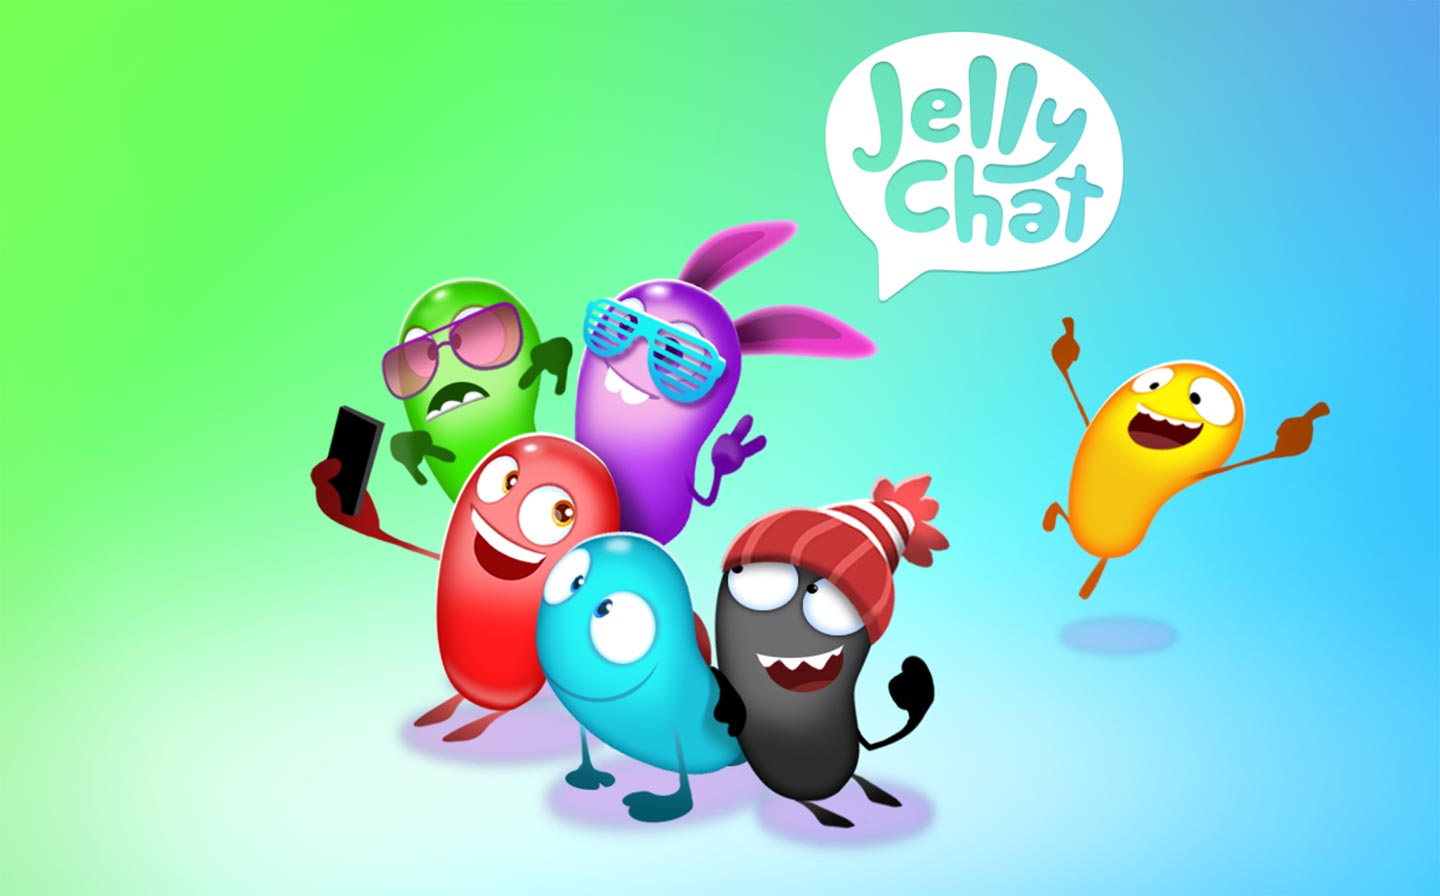 JellyChat v2.0 - Creative community